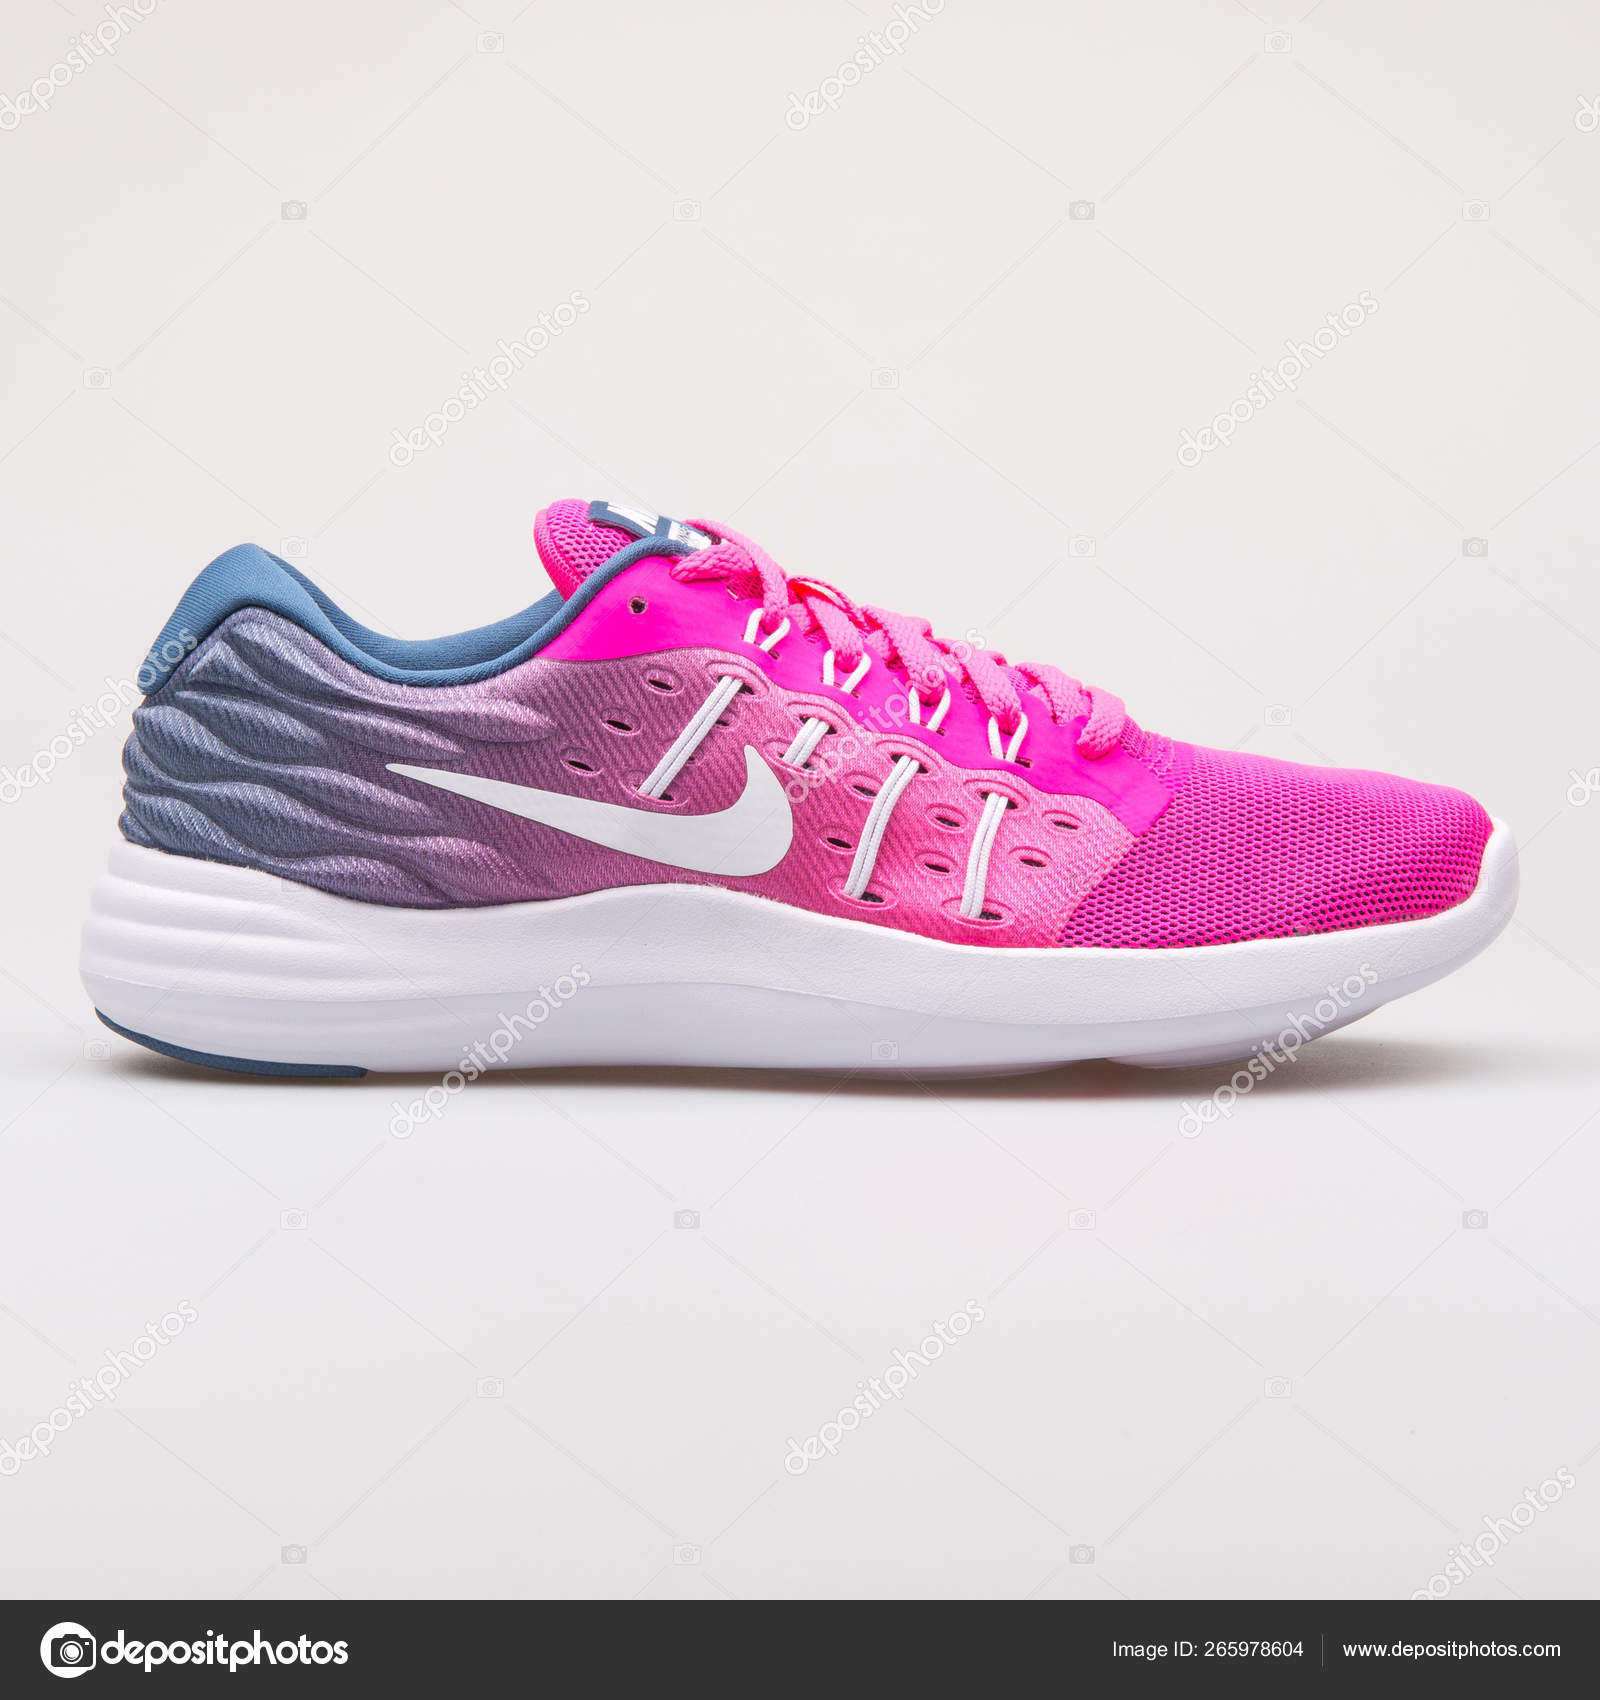 Nike Lunarstelos pink and blue sneaker – Stock Editorial Photo xMarshallfilms #265978604